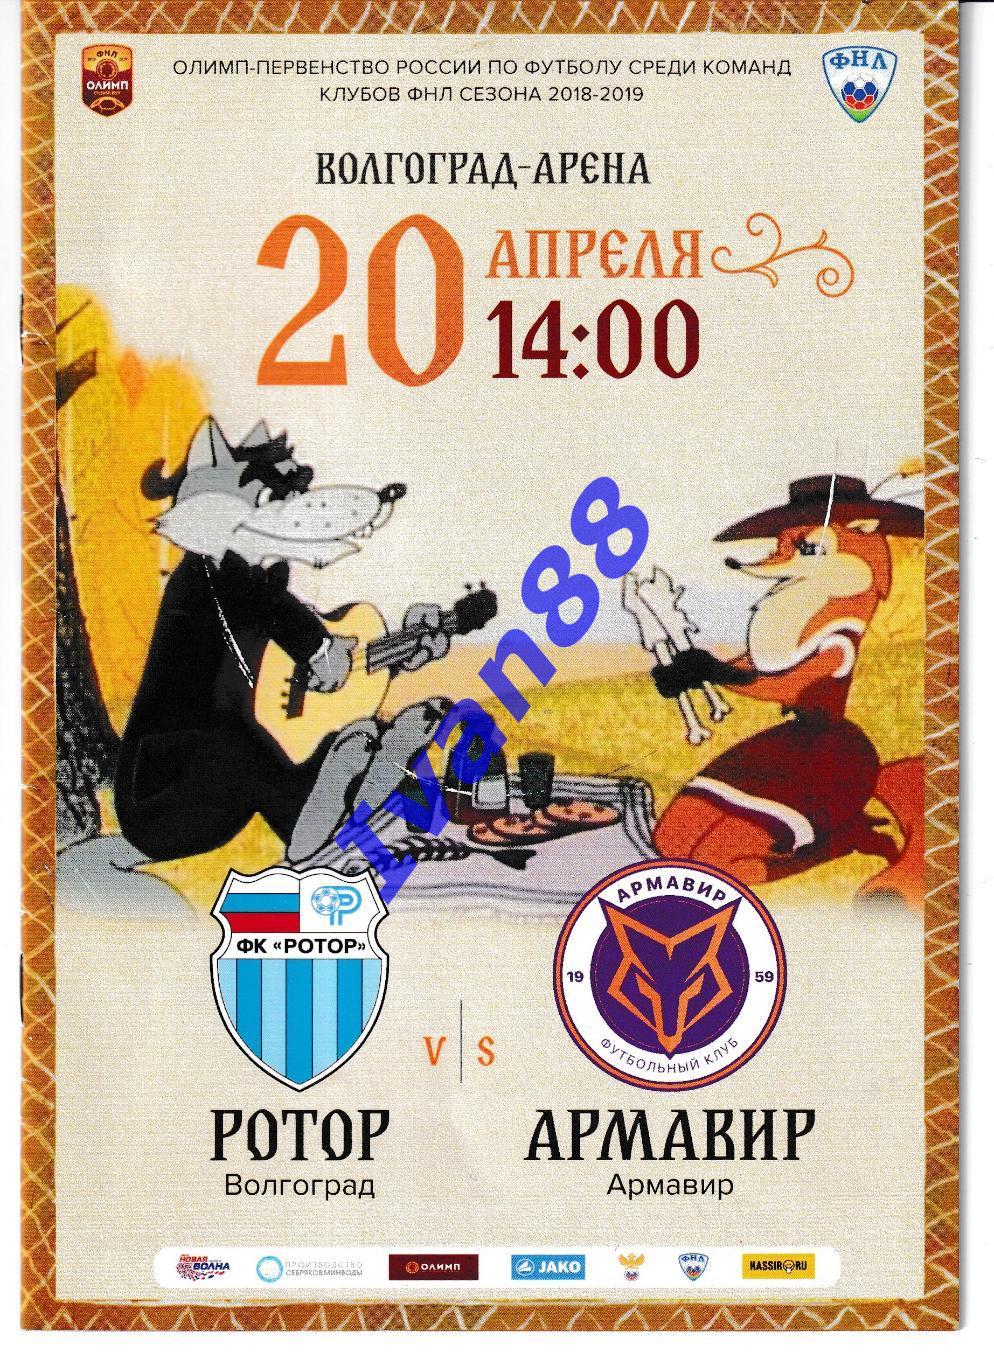 Ротор-2 Волгоград - Химки-м, Ротор - Армавир 2019 1